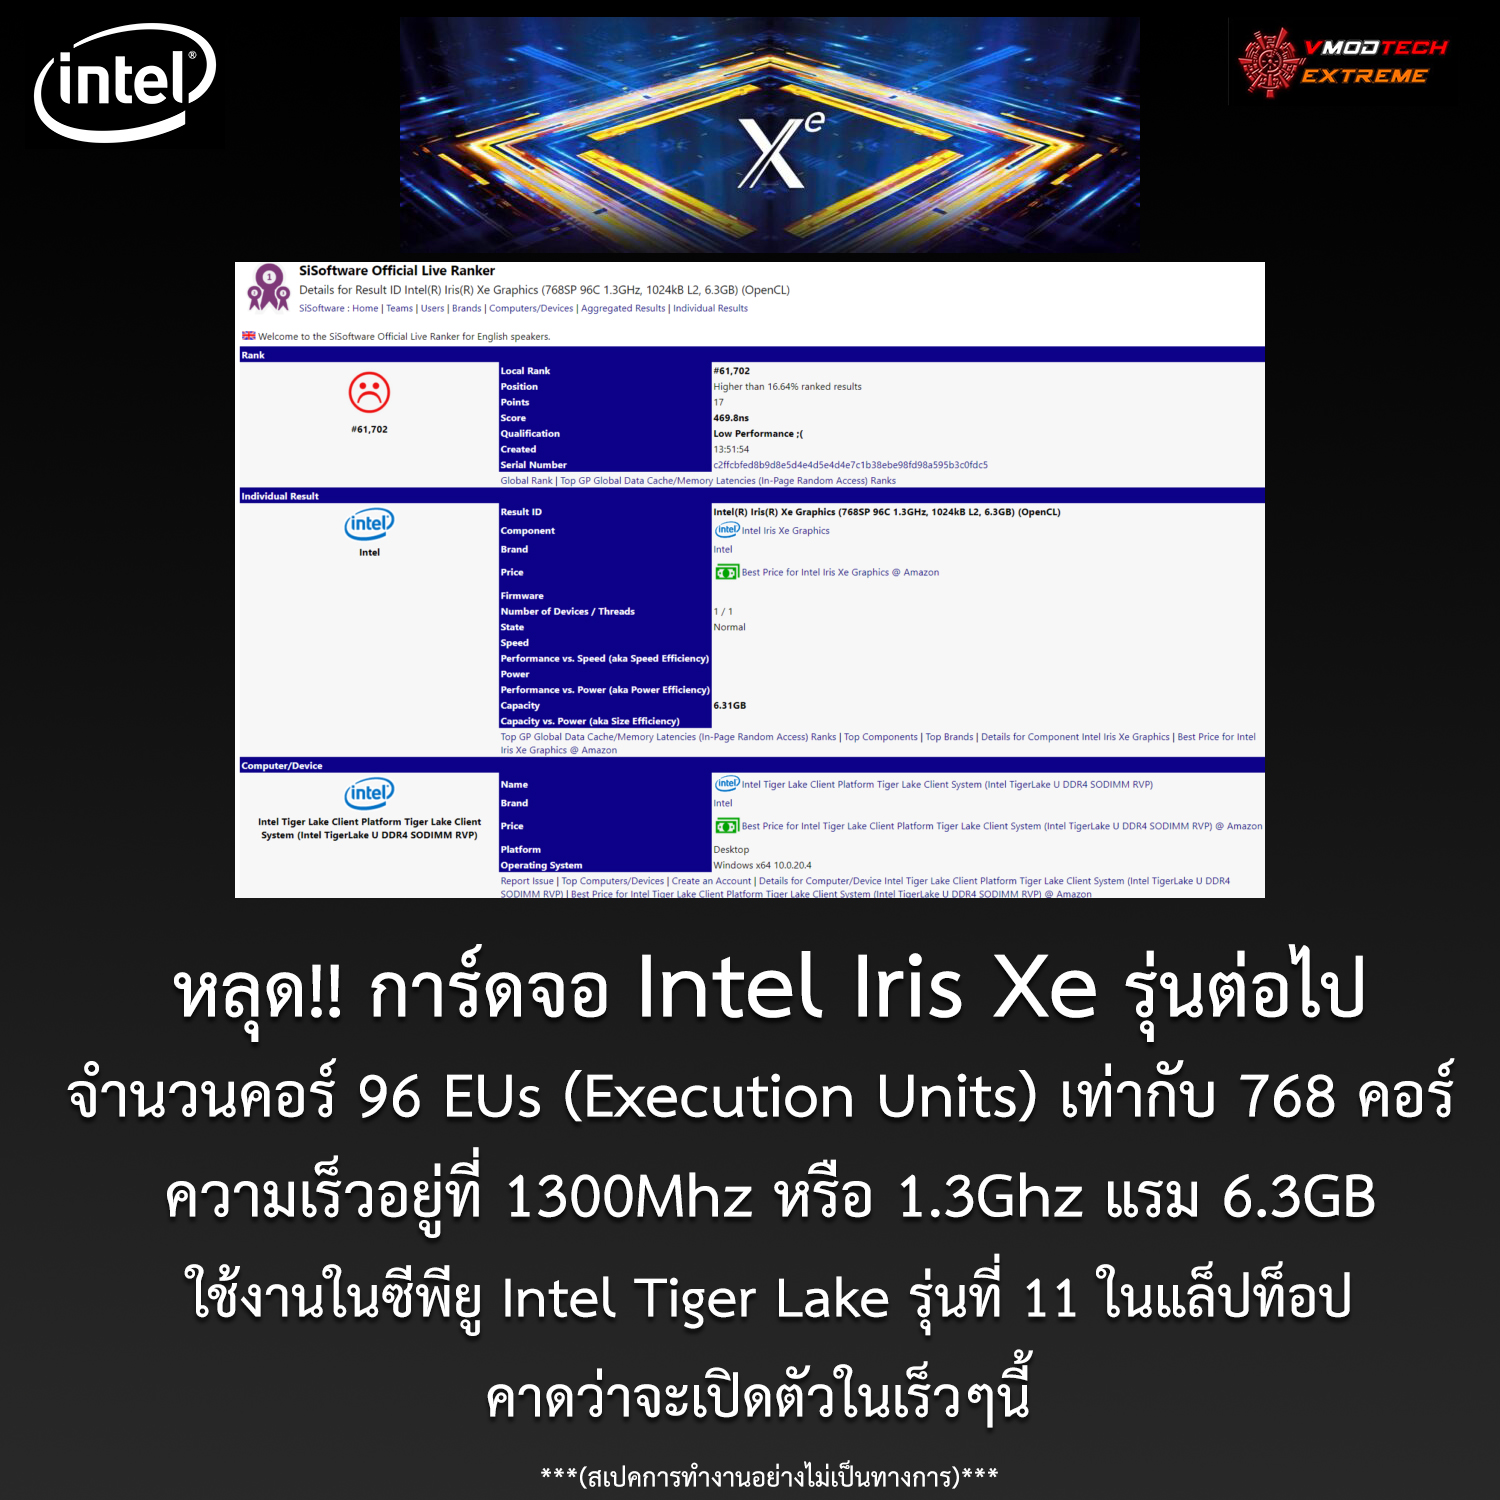 หลุด!! การ์ดจอ Intel Iris Xe รุ่นต่อไปในตระกูล Xe รุ่นใหม่ล่าสุดที่อยู่ในซีพียู Intel Tiger Lake รุ่นที่ 11 ที่คาดว่าจะเปิดตัวในเร็วๆนี้ 